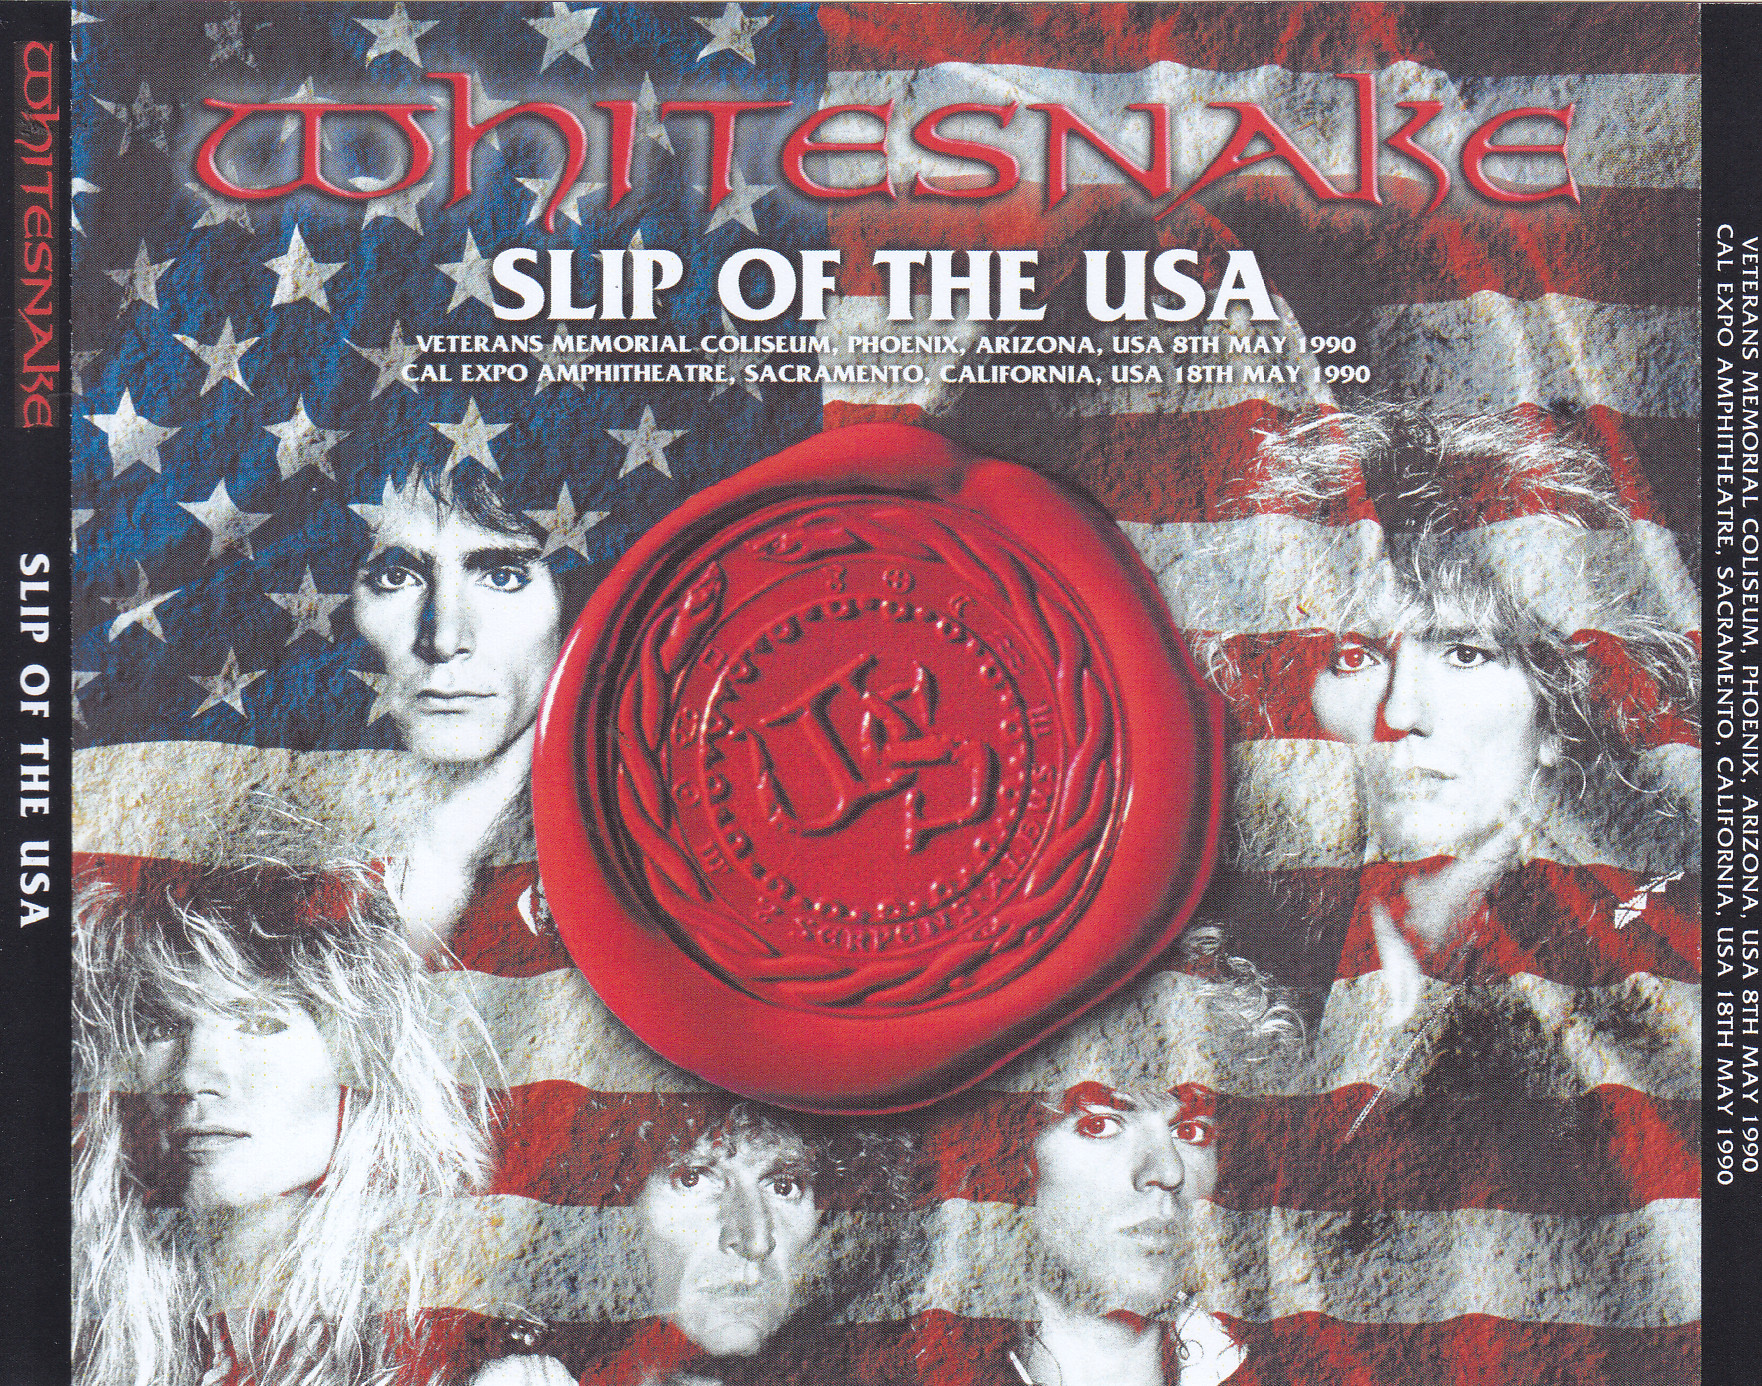 Whitesnake / Slip Of The USA /4CDR – GiGinJapan